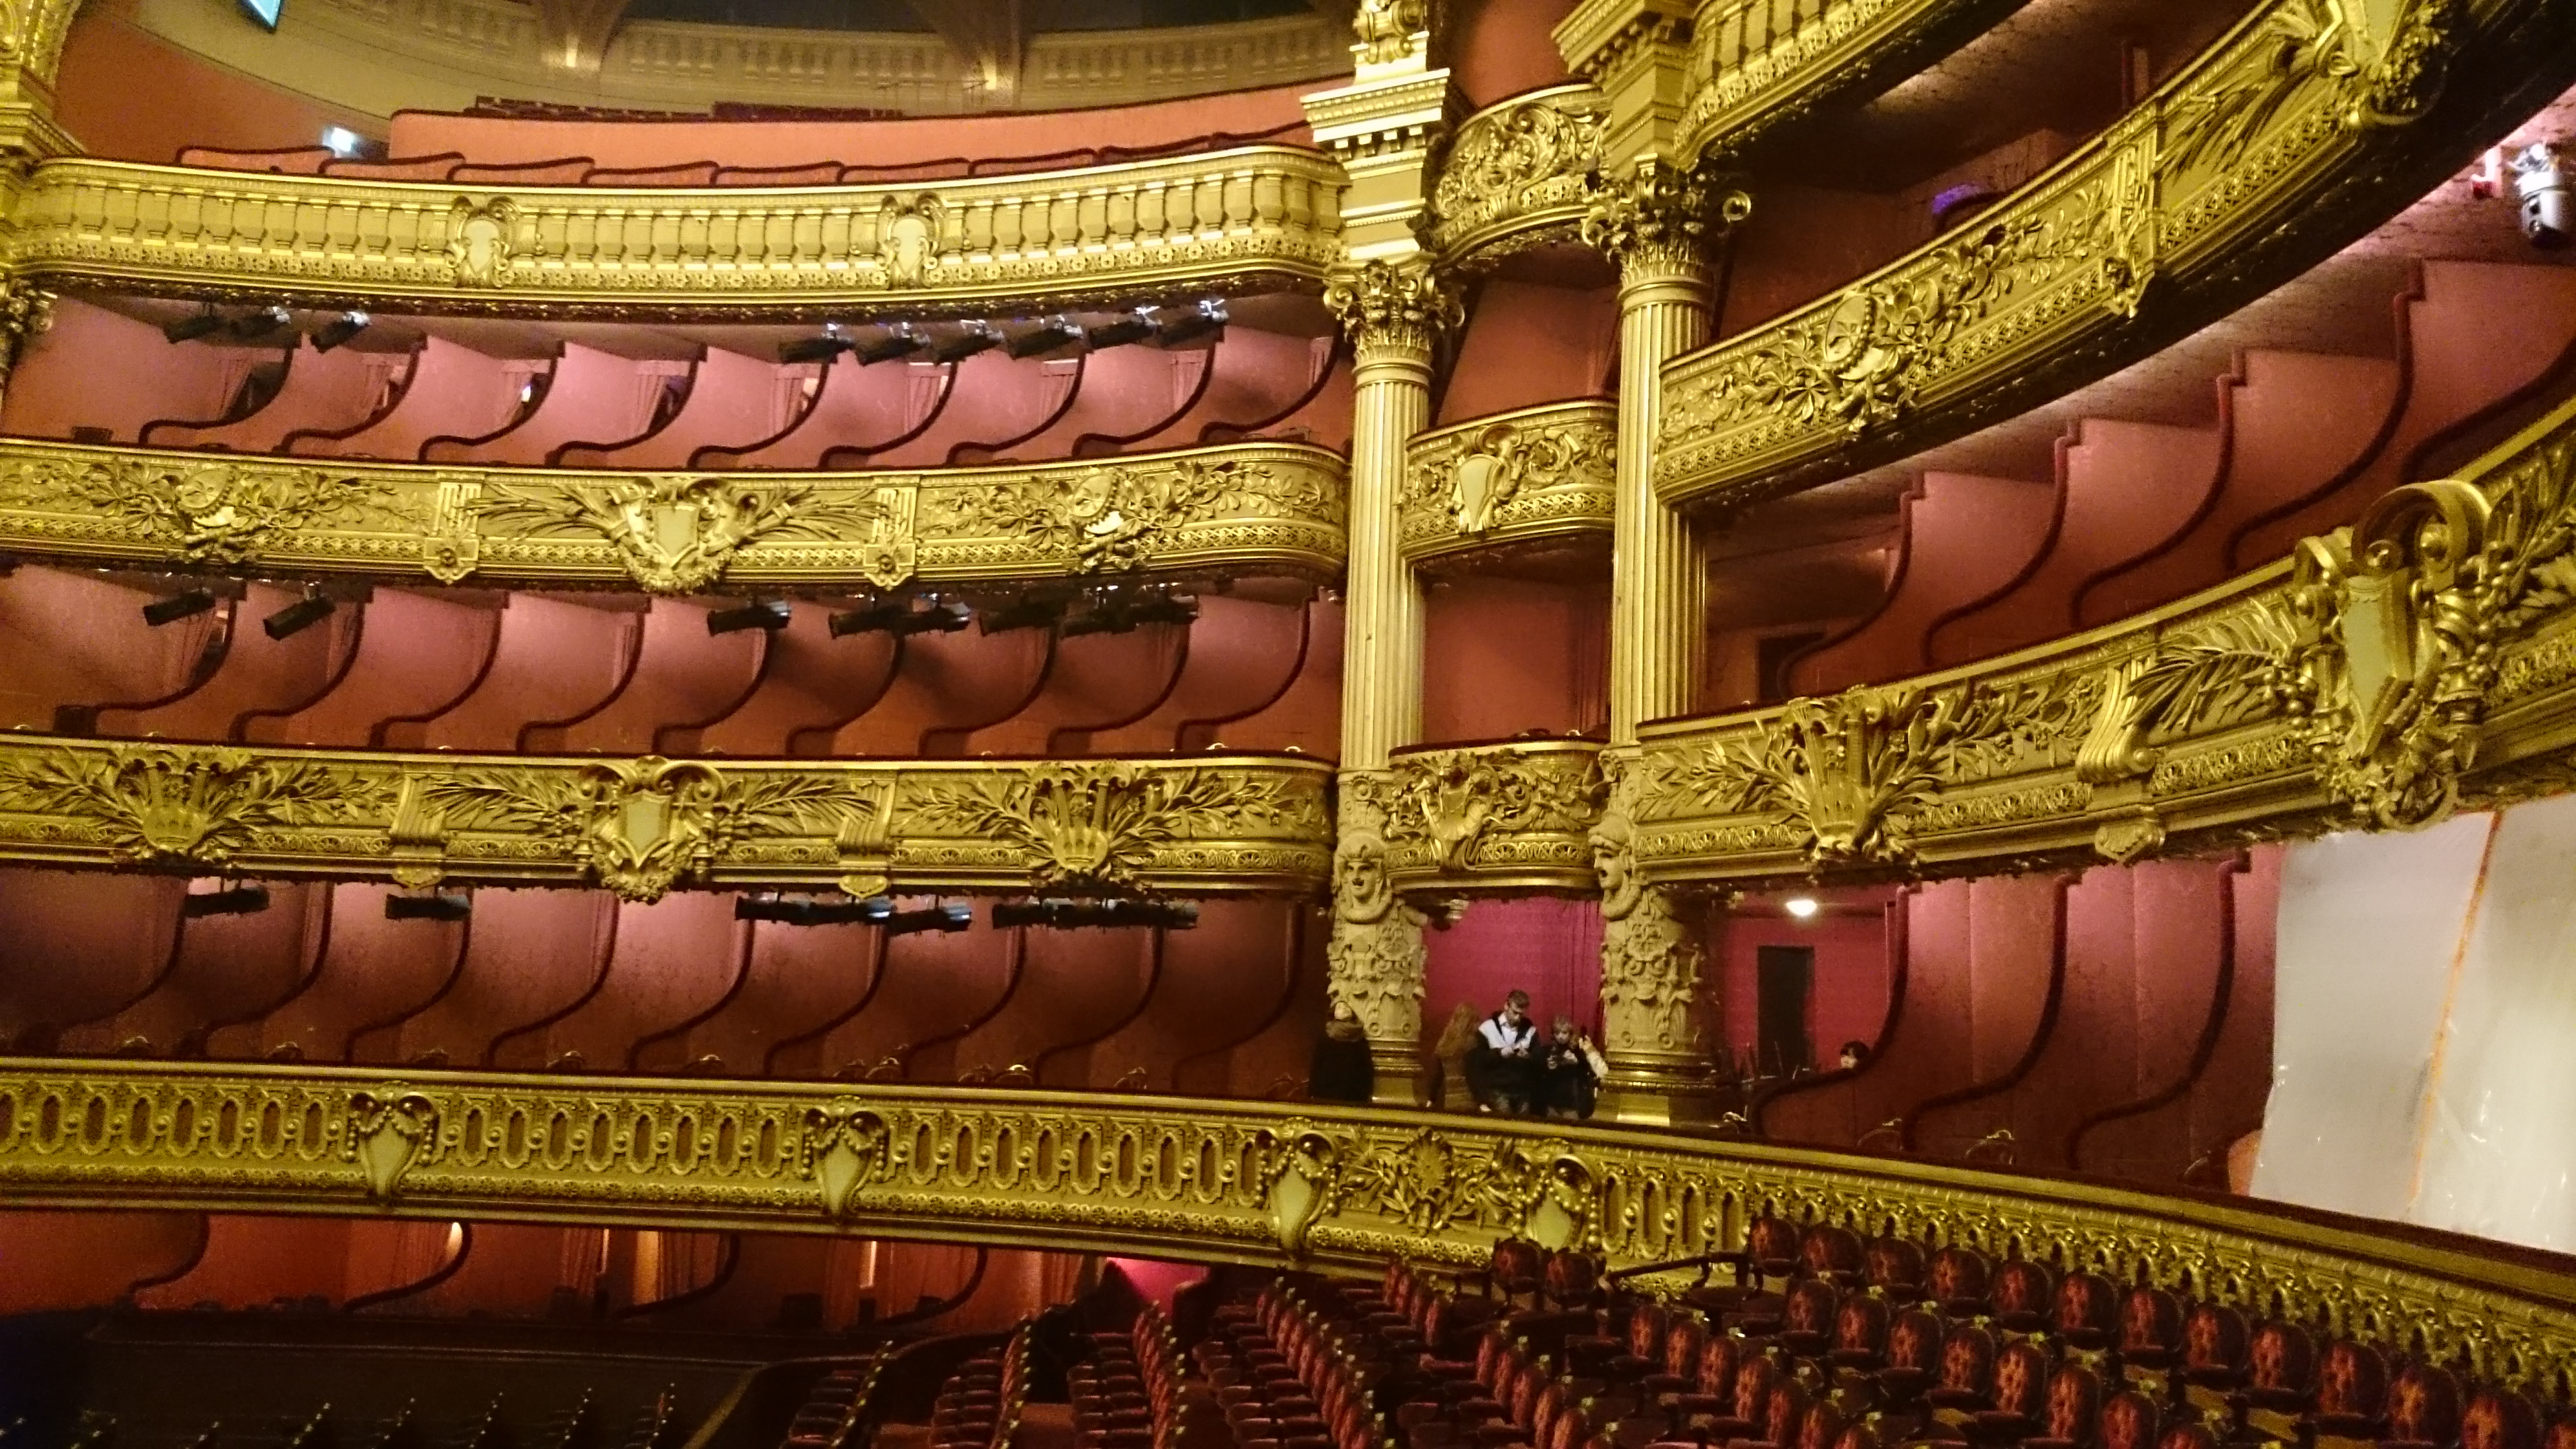 dsc 1022 - Una visita a la Opera de Paris (Palais Garnier)